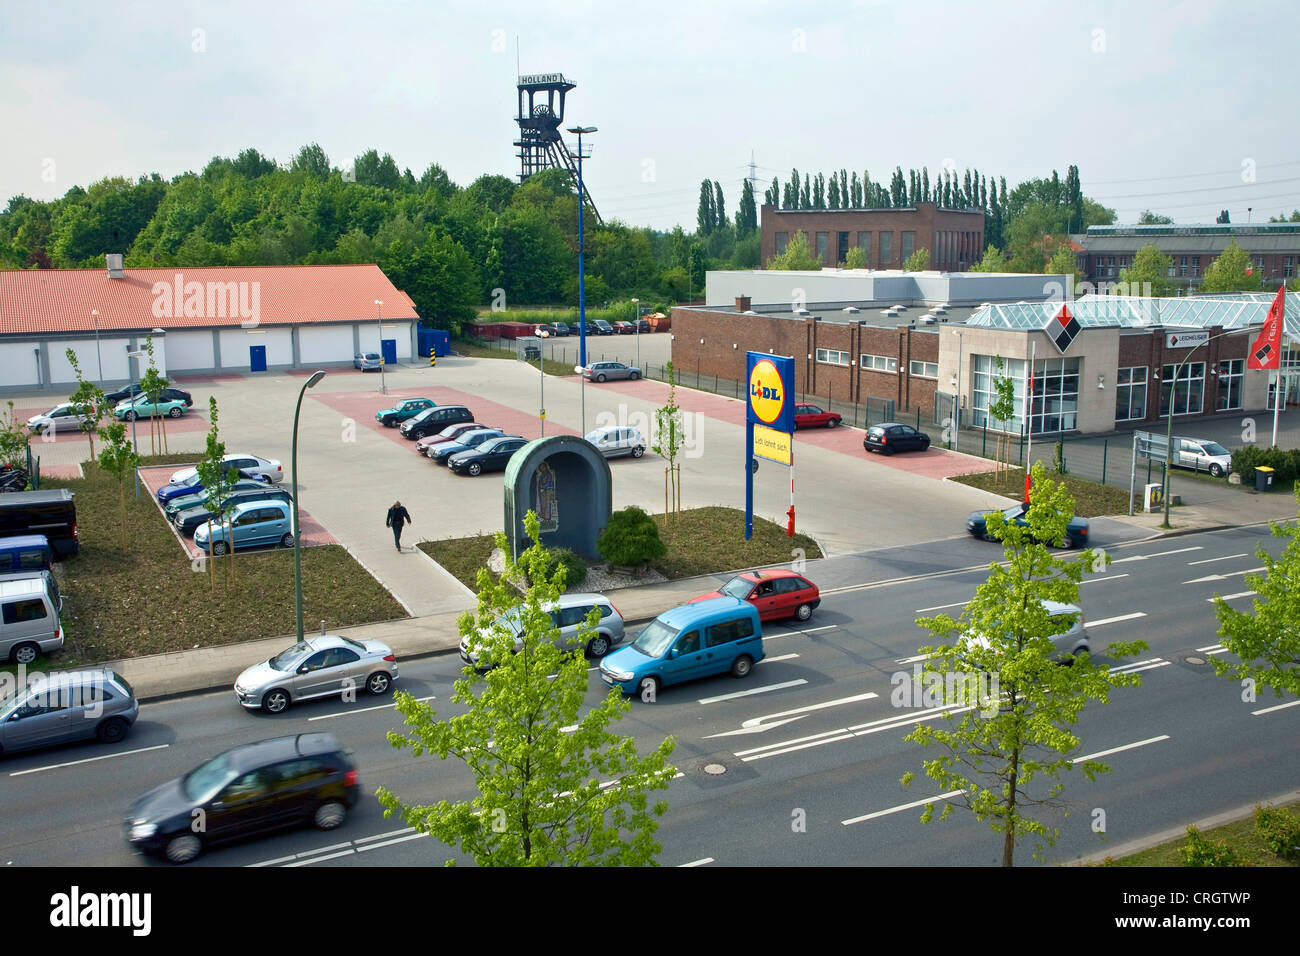 neues Gewerbegebiet in Bochum-Wattenscheid mit den Förderturm der ehemaligen Kohle mine Holland im Hintergrund, Bochum, Ruhrgebiet, Nordrhein-Westfalen, Deutschland Stockfoto